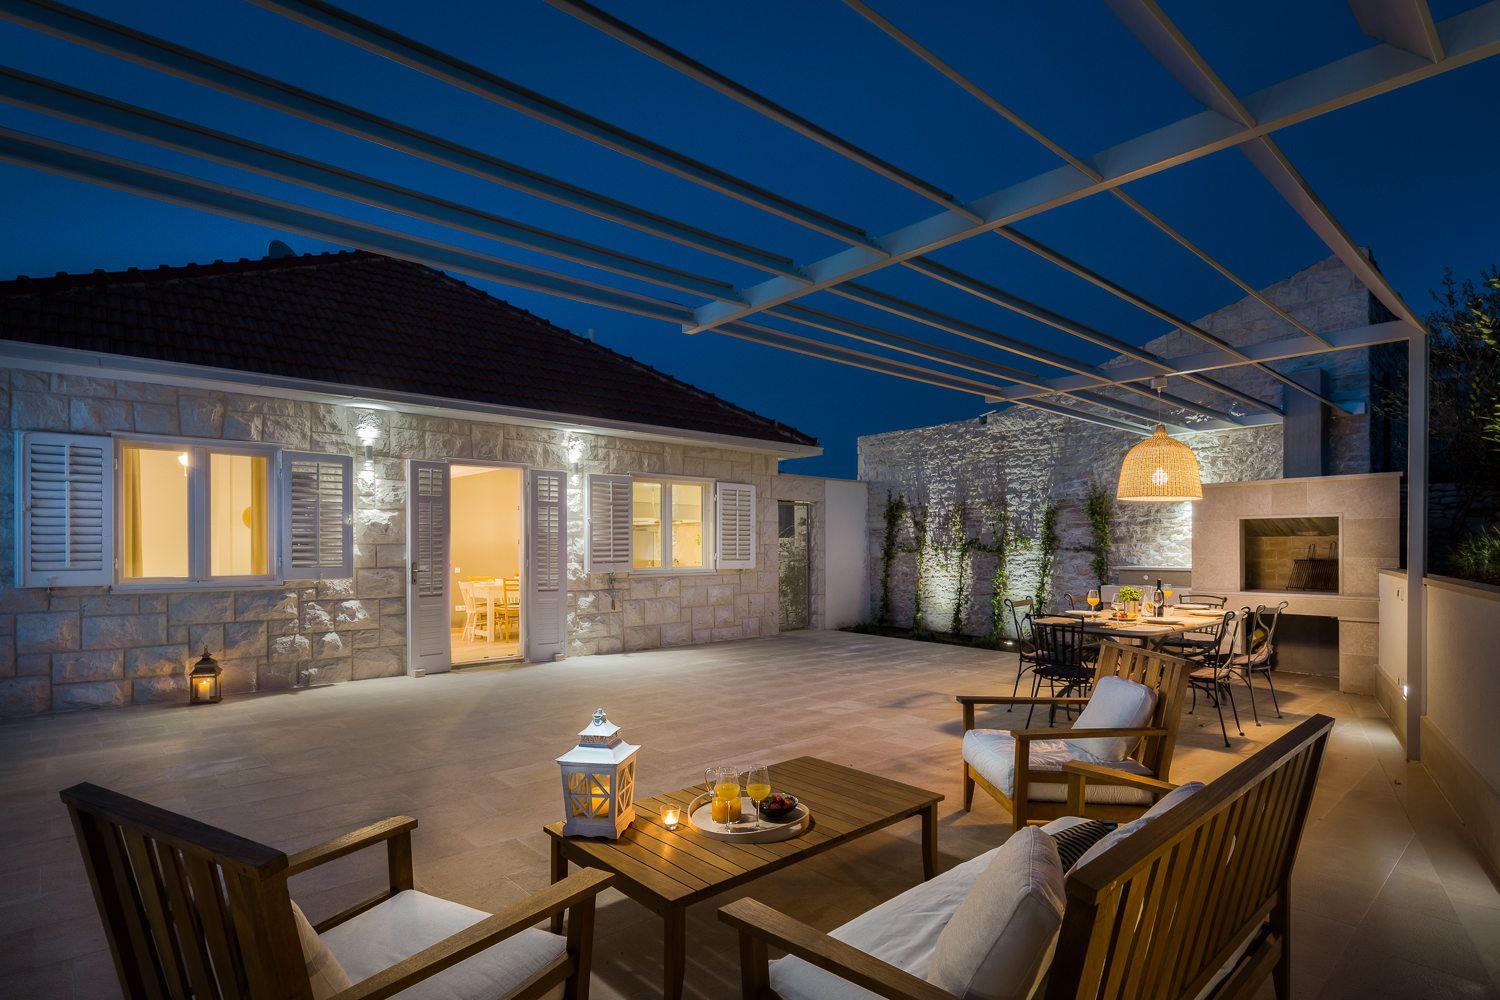 Ferienhaus mit Privatpool für 8 Personen ca.  Ferienhaus in Kroatien